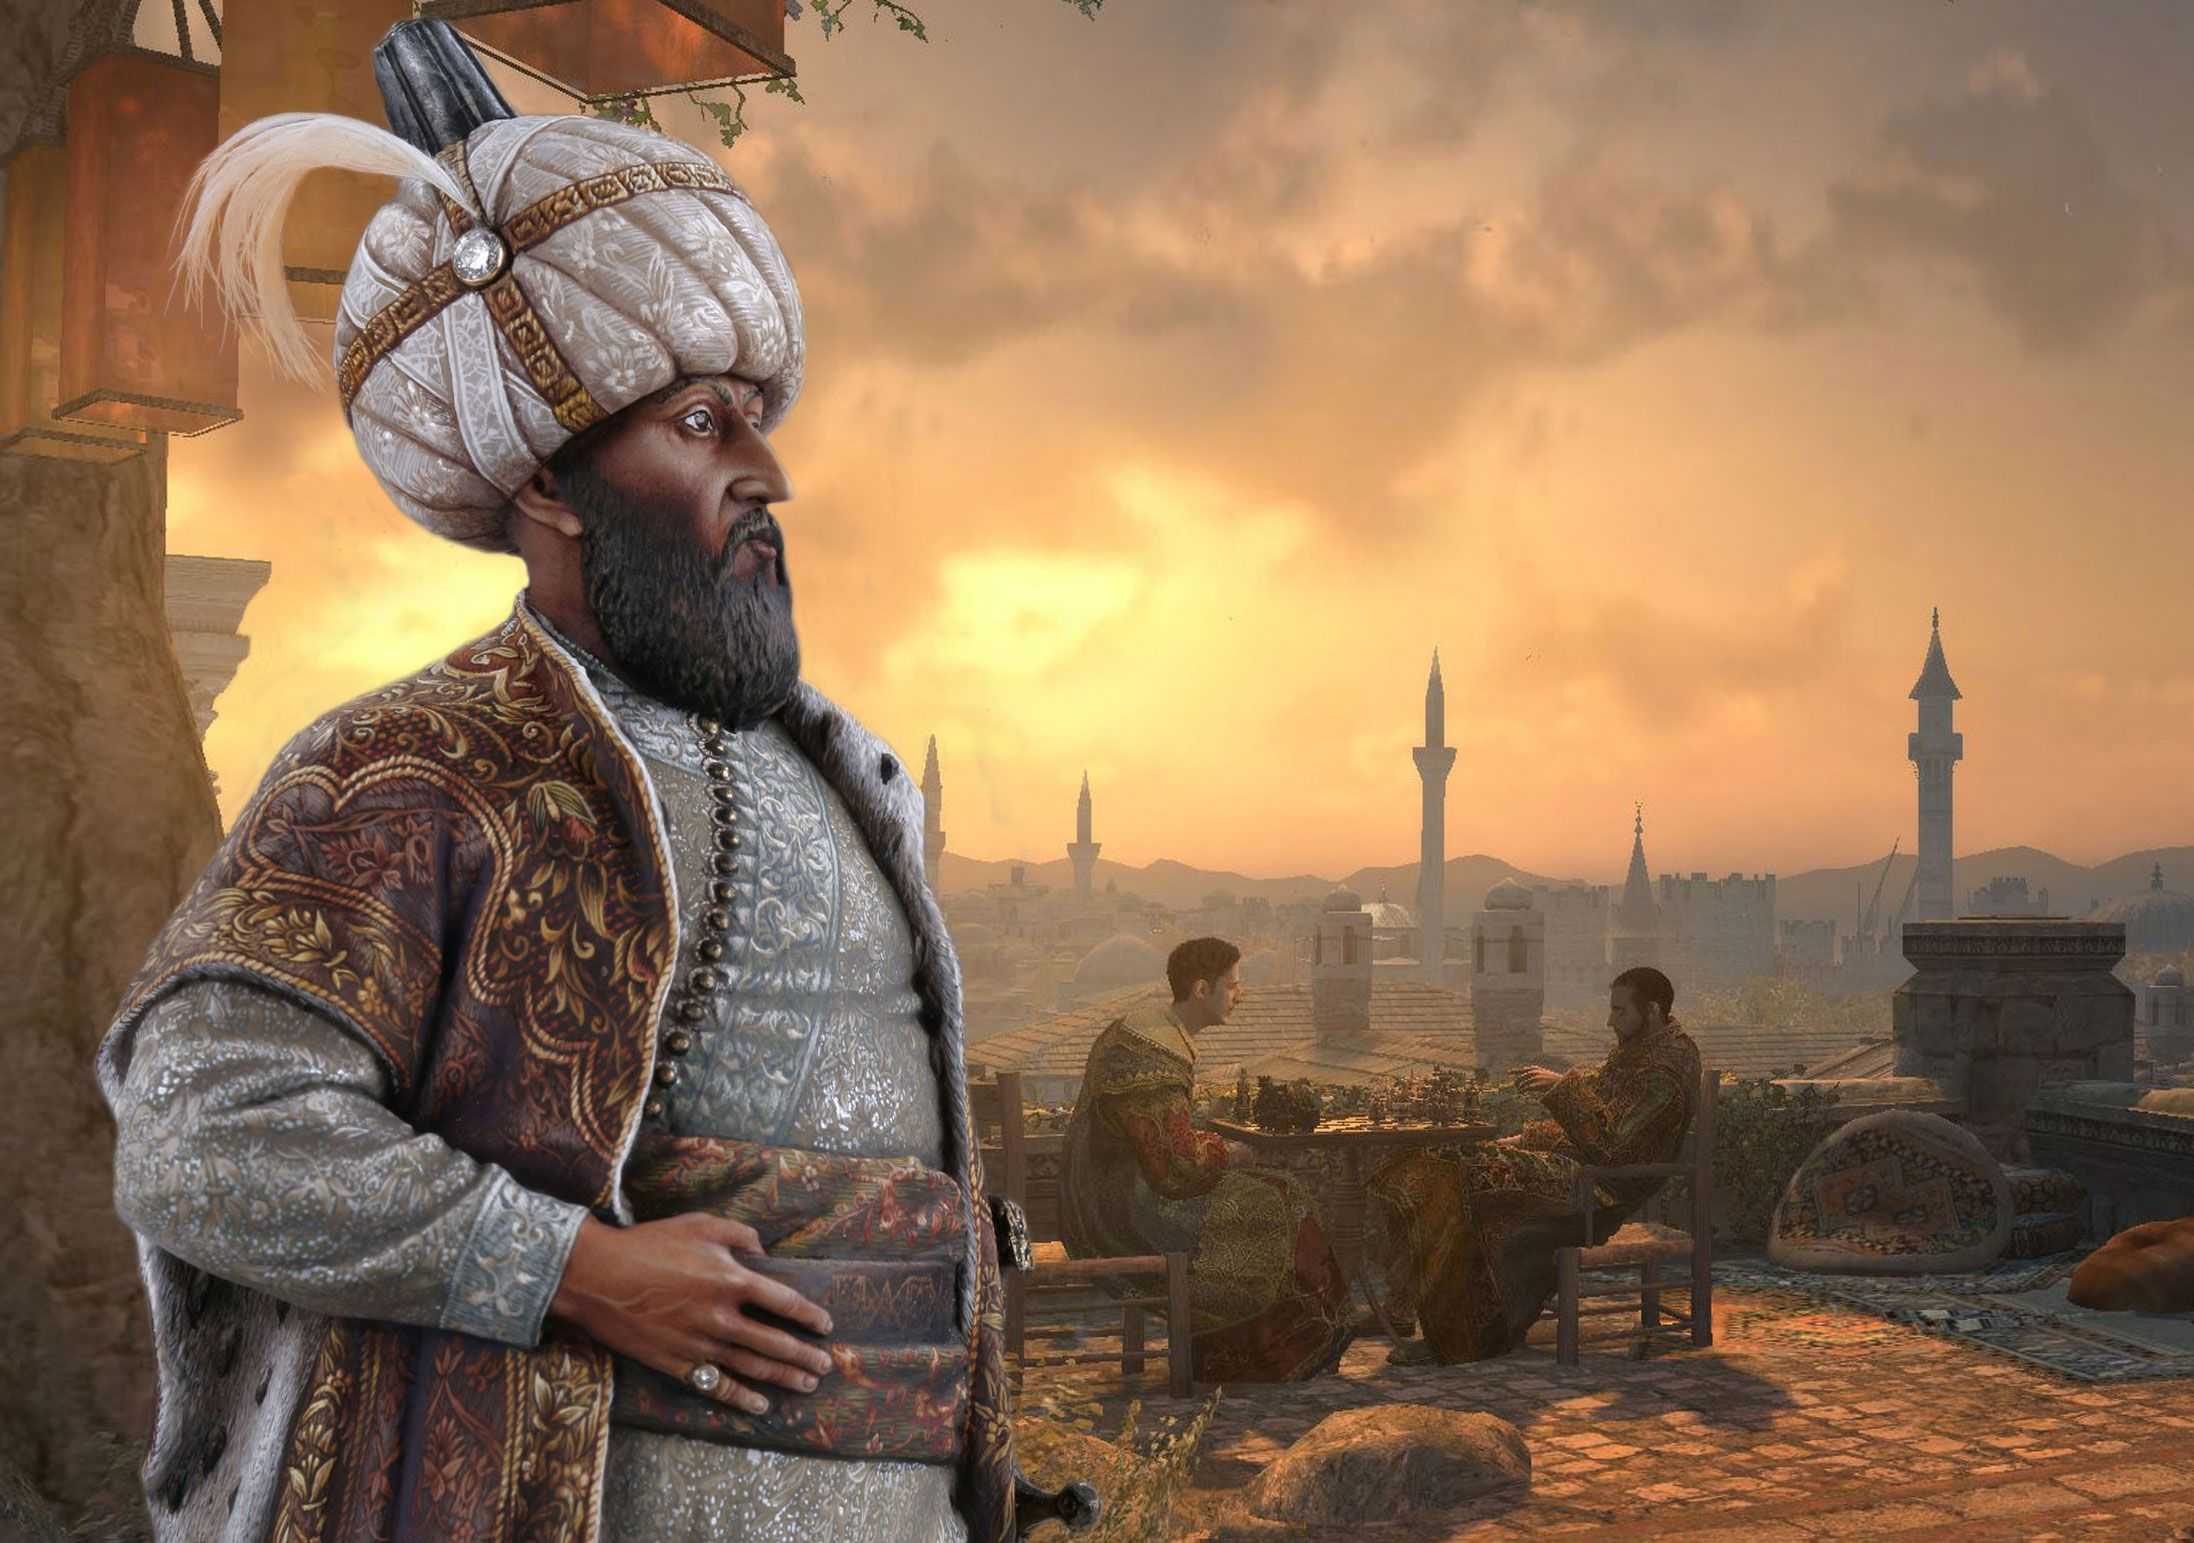 Османы: династия турецких султанов